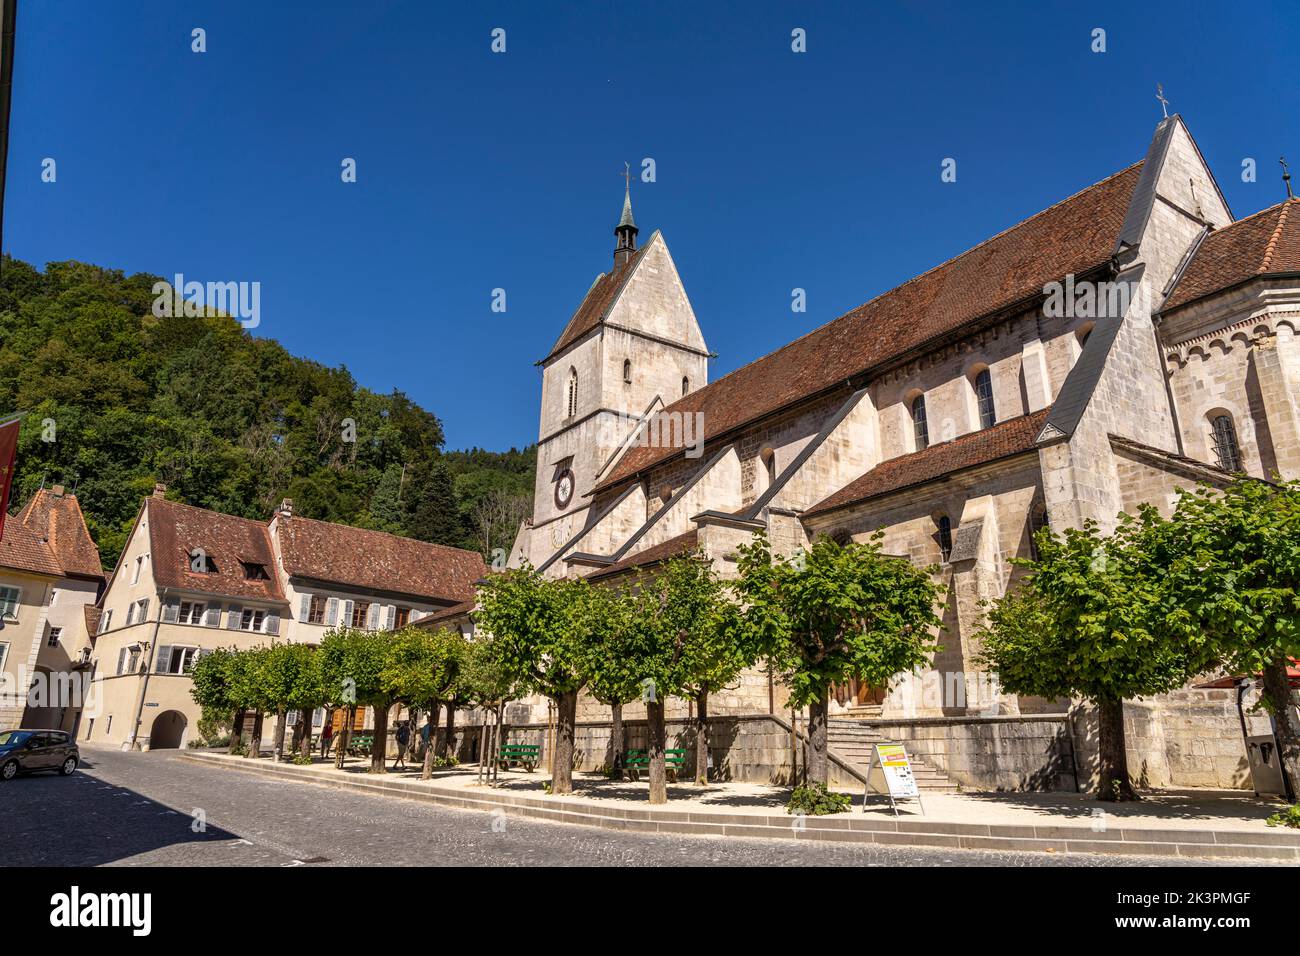 Die Stiftskirche in Saint-Ursanne, Schweiz, Europa |  The collegiate church in  Saint-Ursanne, Switzerland, Europe Stock Photo